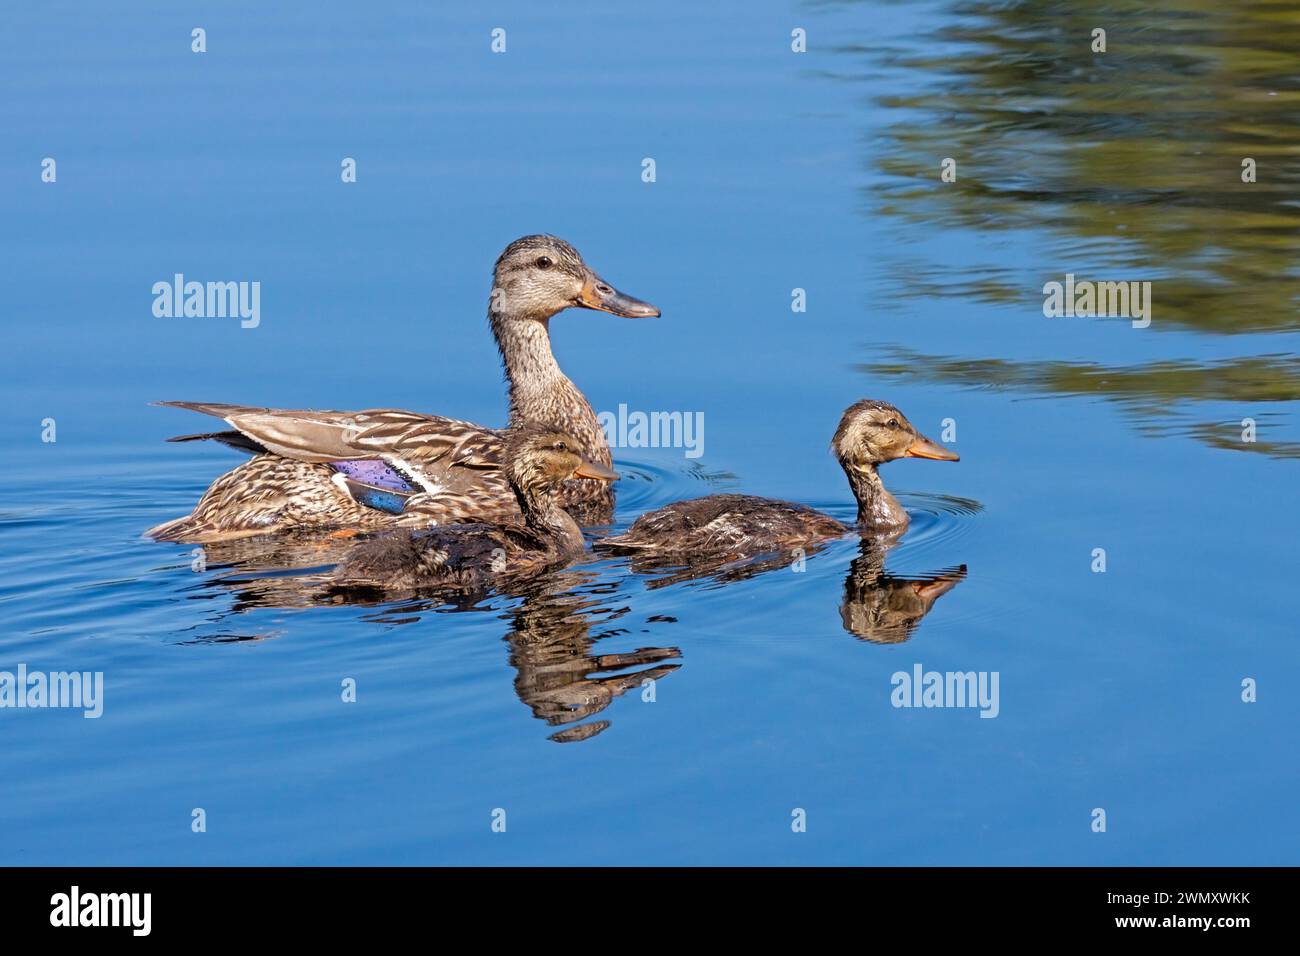 Nelle acque blu di un lago tranquillo una madre mallard nuota con i suoi due anatroccoli. Foto Stock